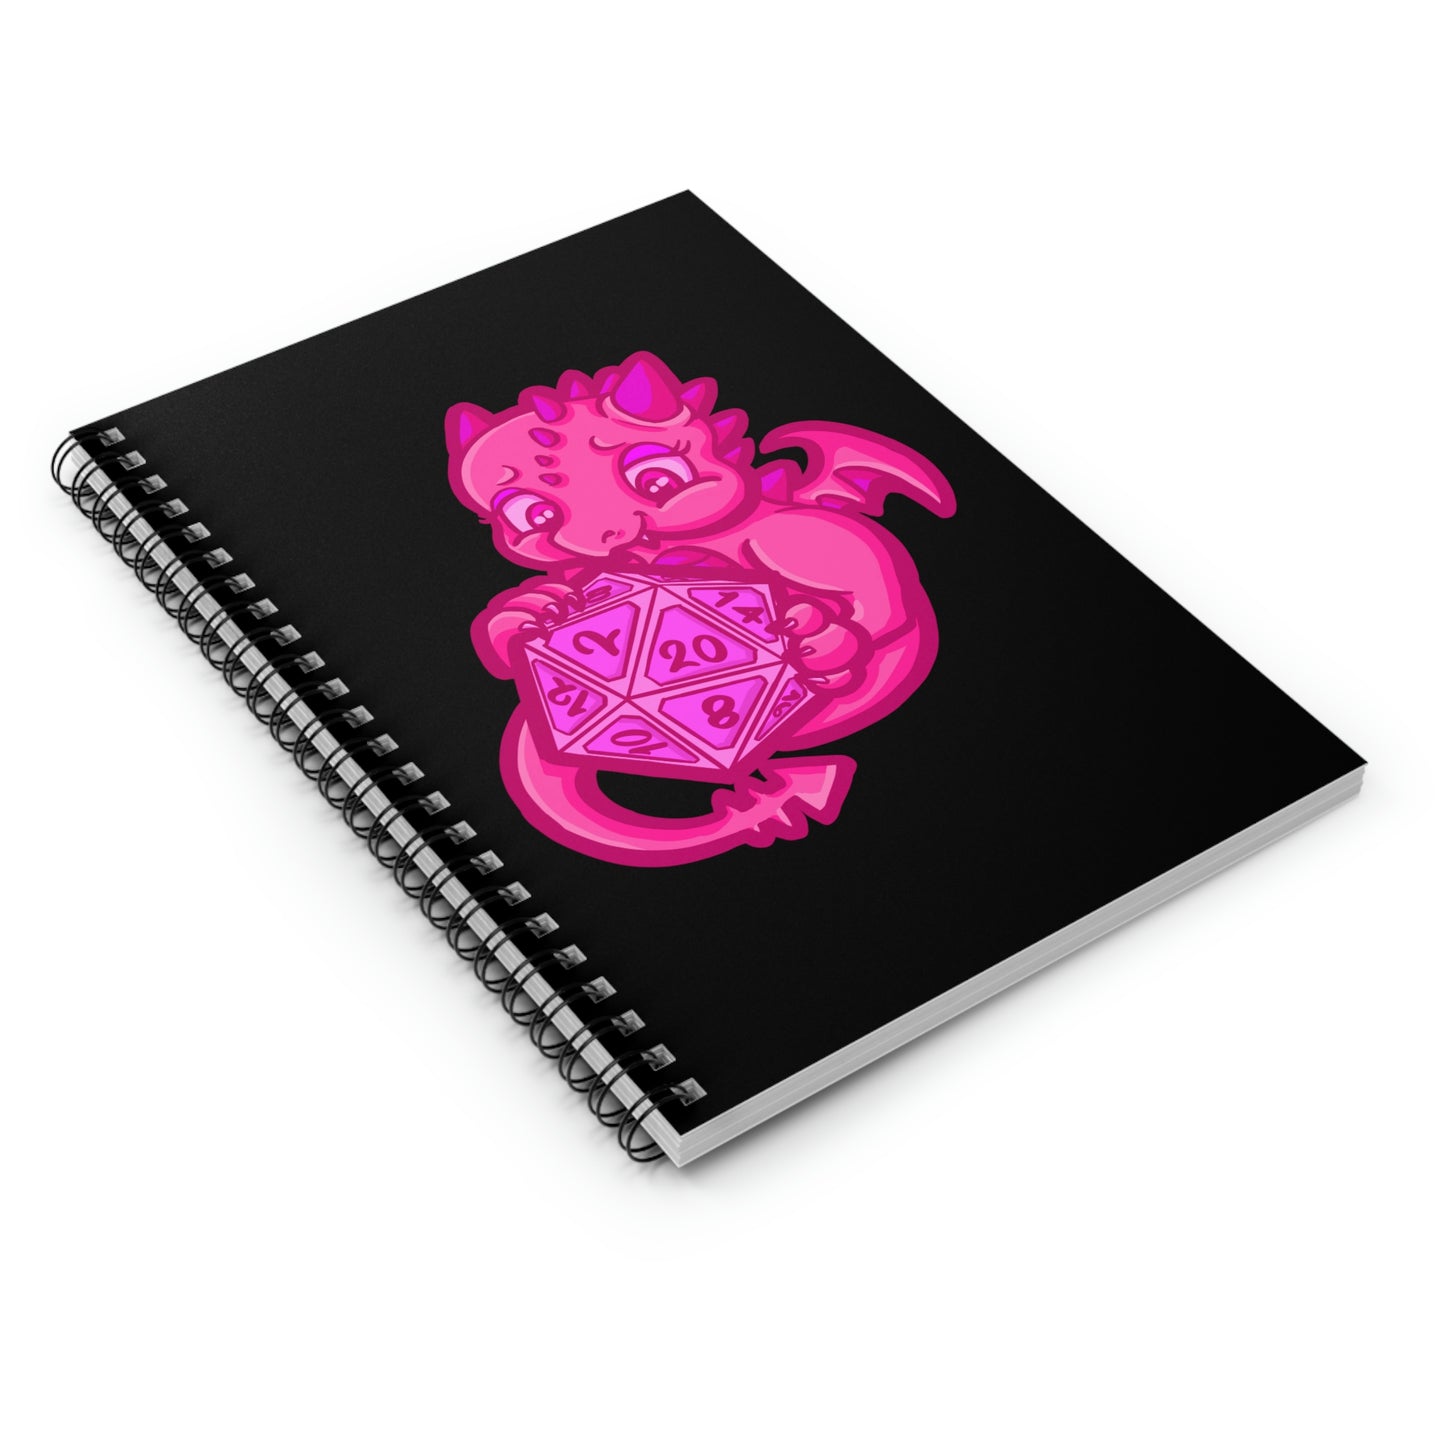 Kait Merryman, D20 Dragon DND Spiral Notebook - Ruled Line